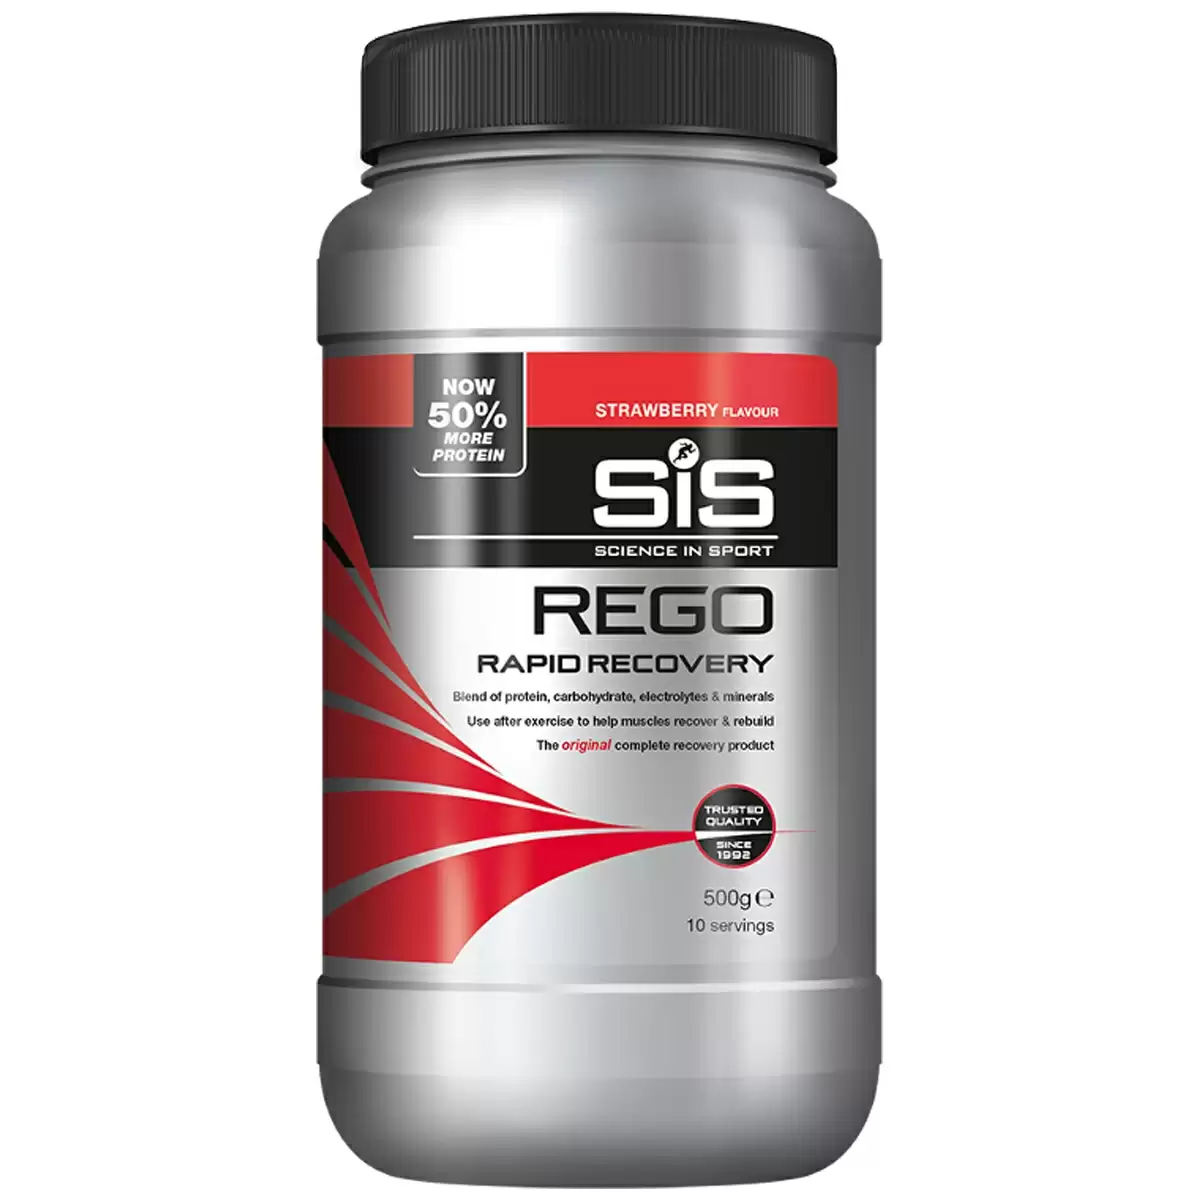 Rego Rapid Recovery Drink Erdbeergeschmack 500g - image